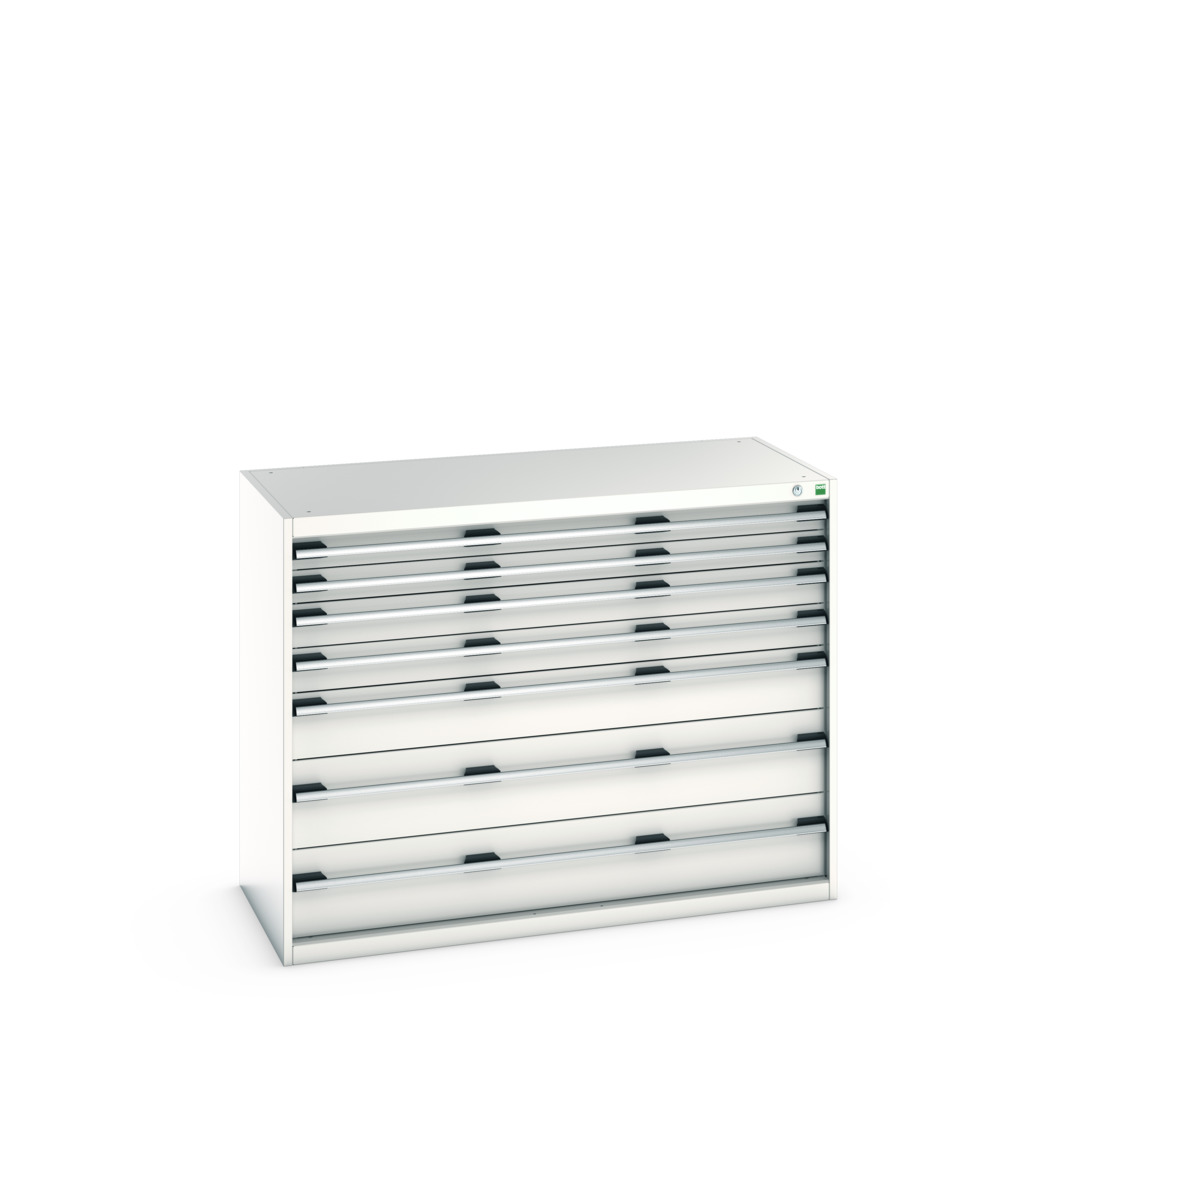 40022125.16V - cubio drawer cabinet